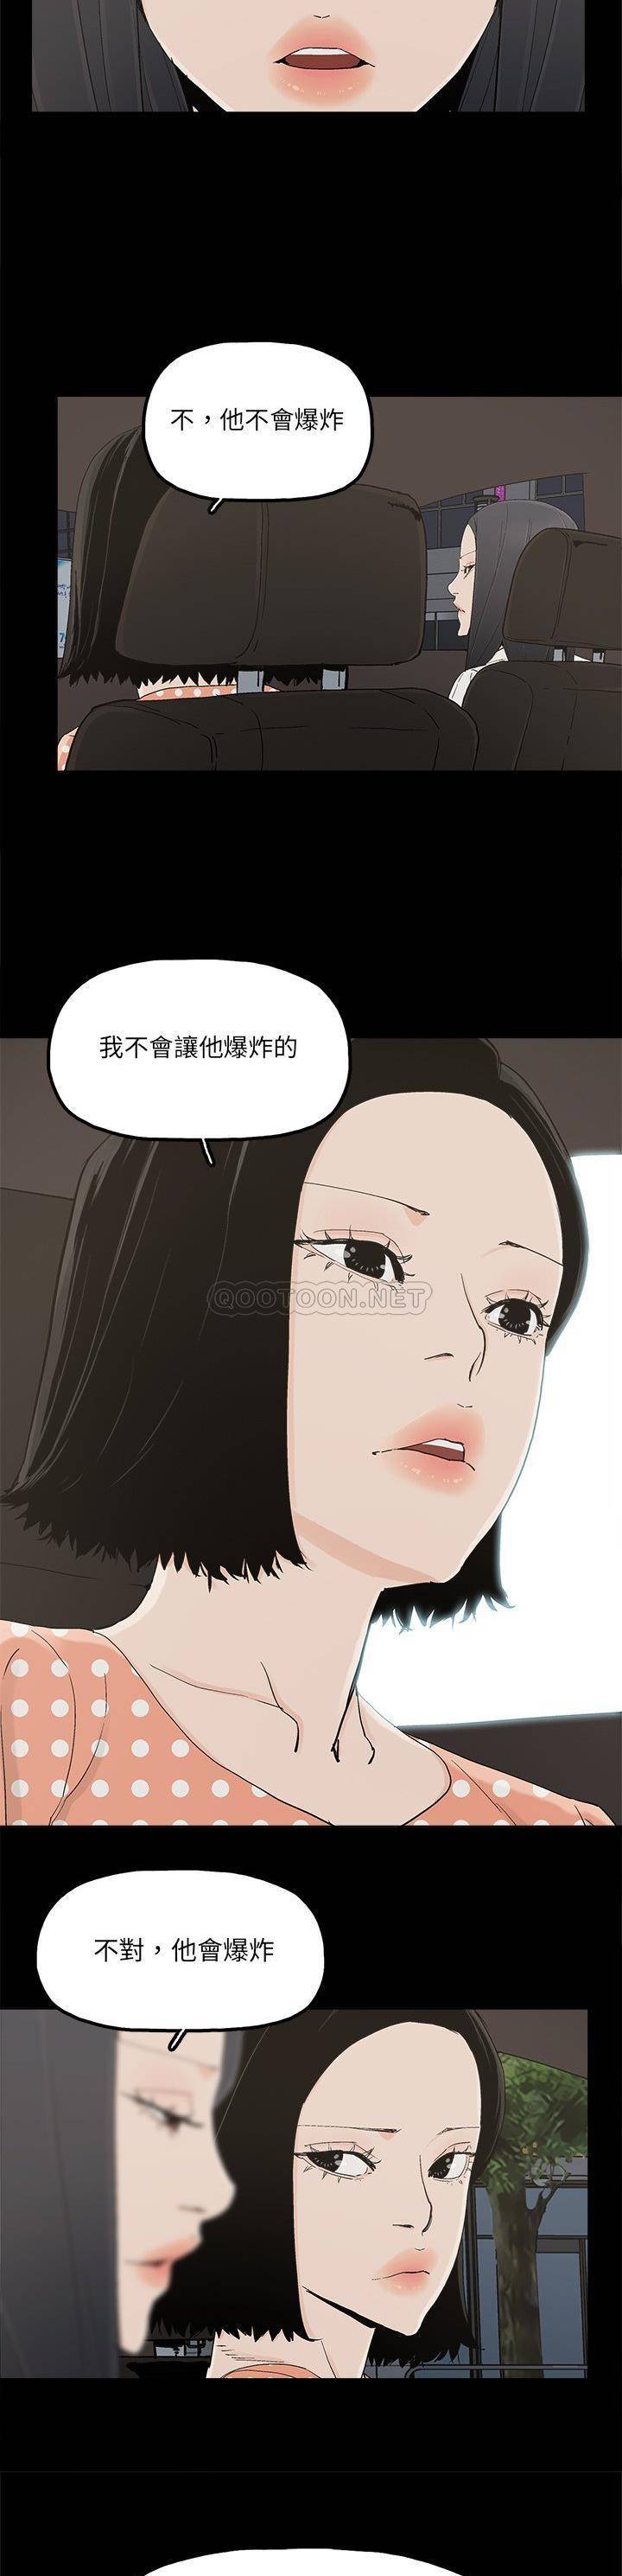 韩国污漫画 幸福 最终话 3